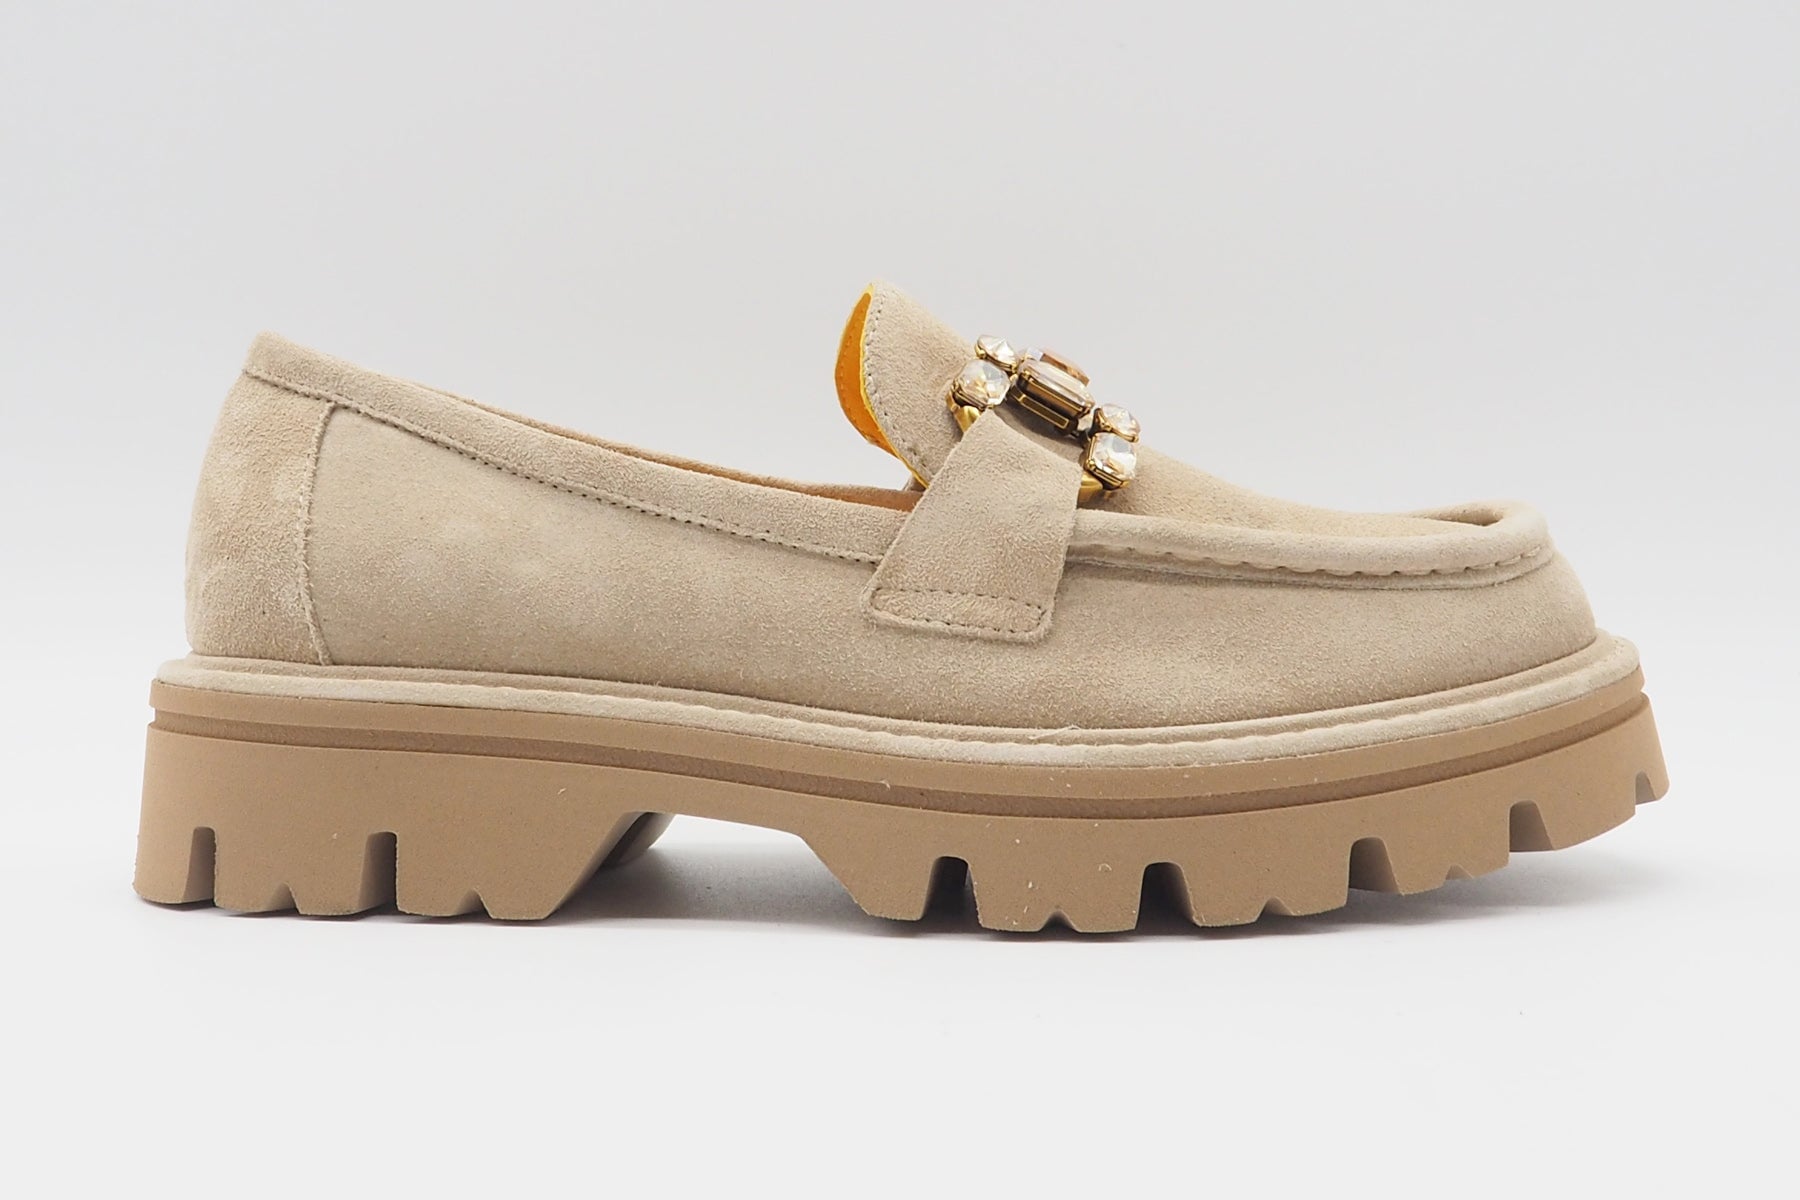 Damen Loafer aus Veloursleder in Beige - Frida - Absatz 2cm Damen Loafers & Schnürer Mara Bini 